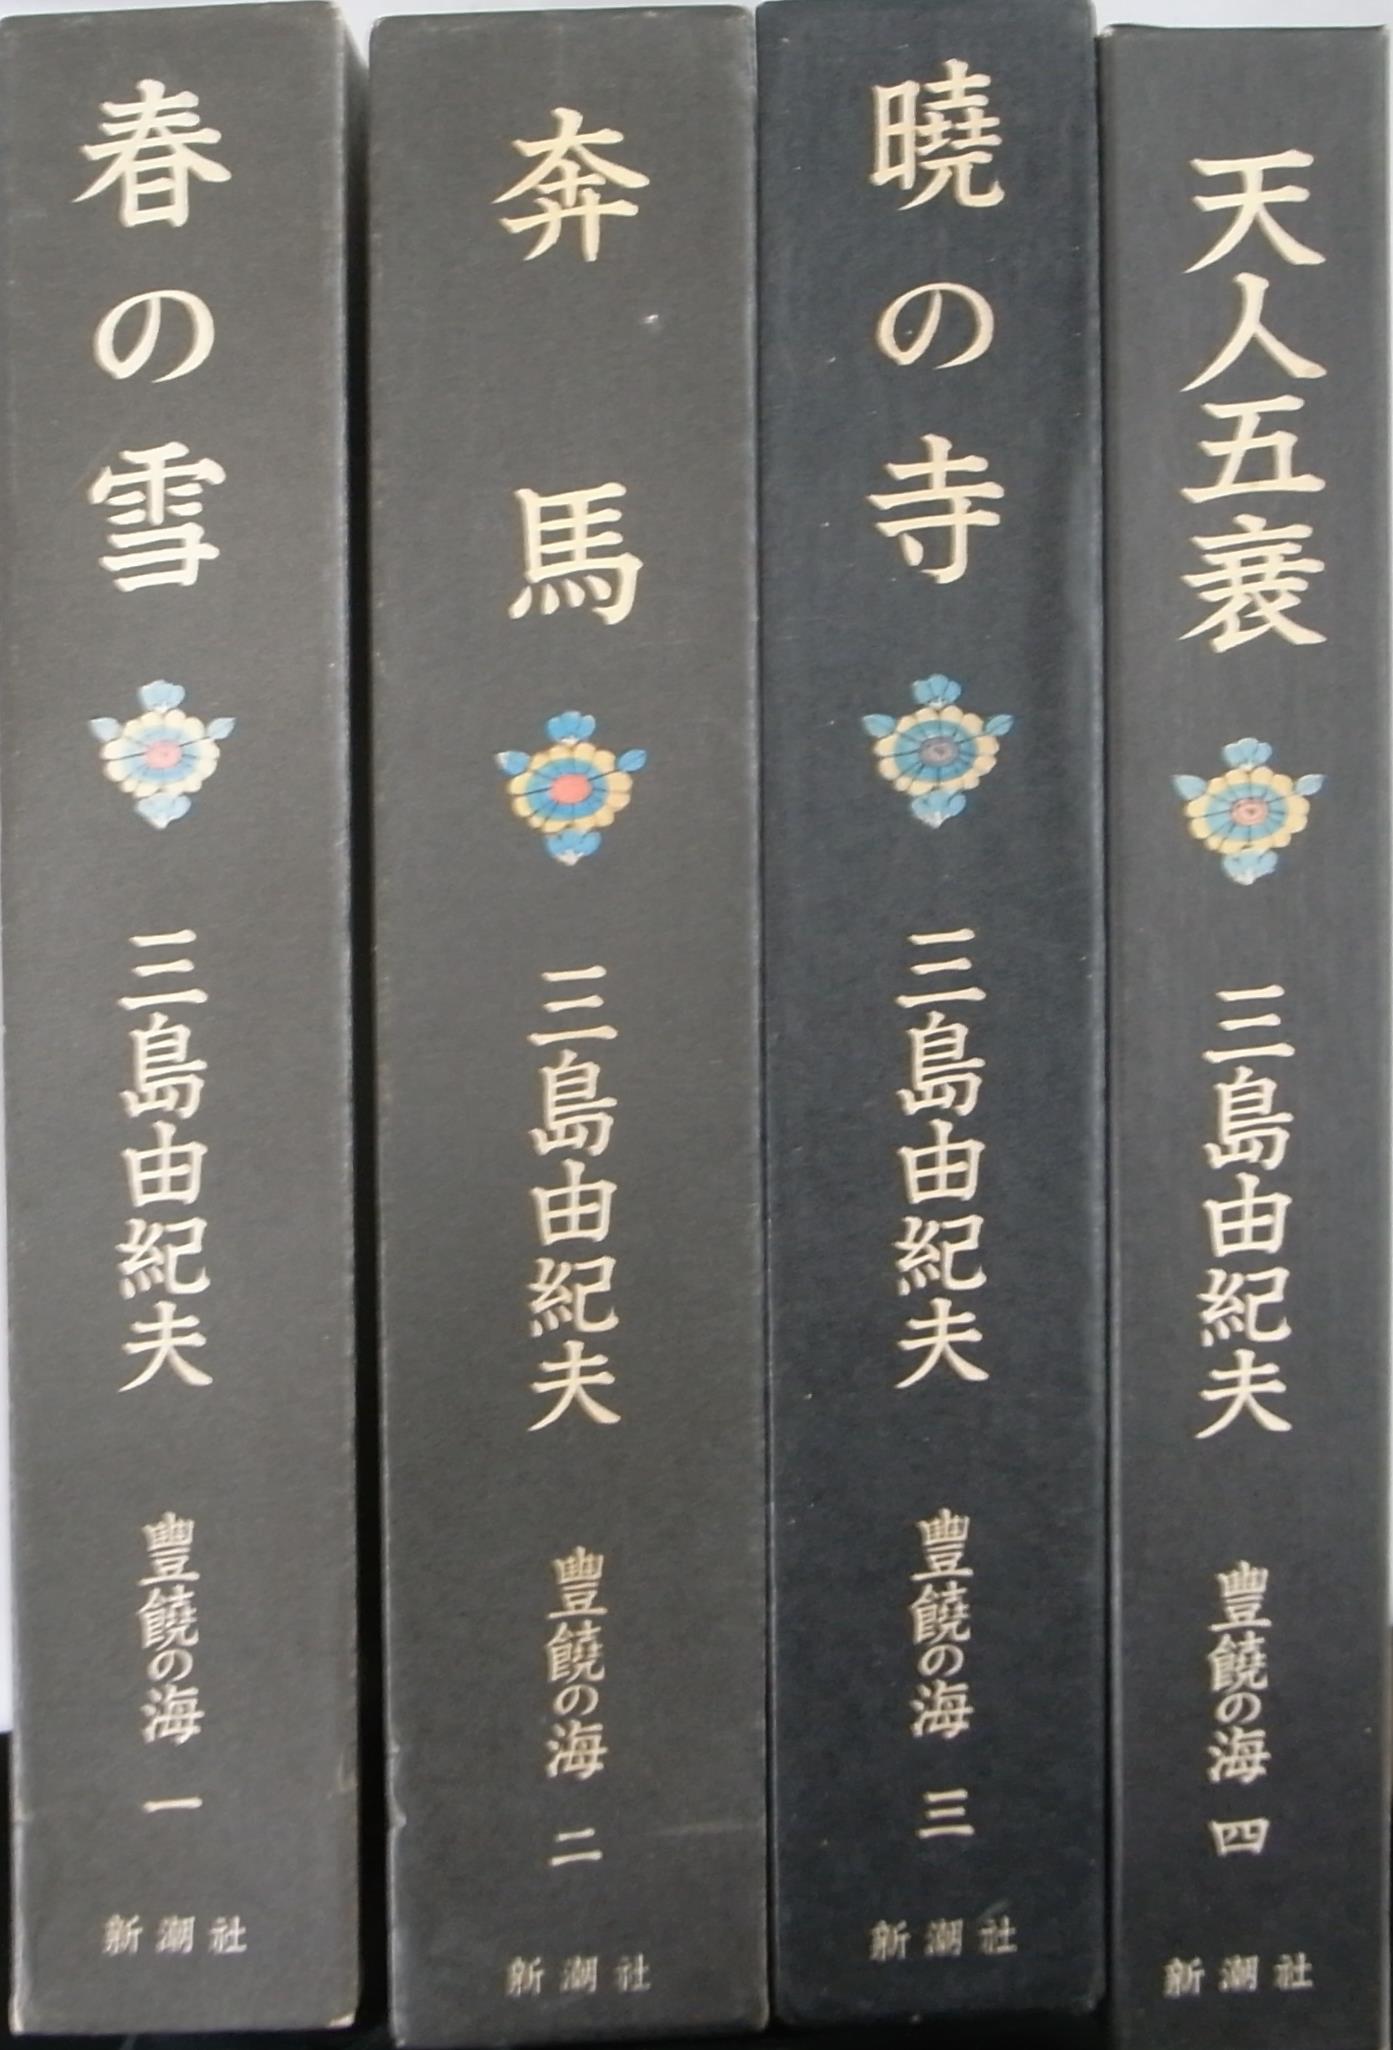 豊饒の海 全4冊揃 三島由紀夫 | 古本よみた屋 おじいさんの本、買います。